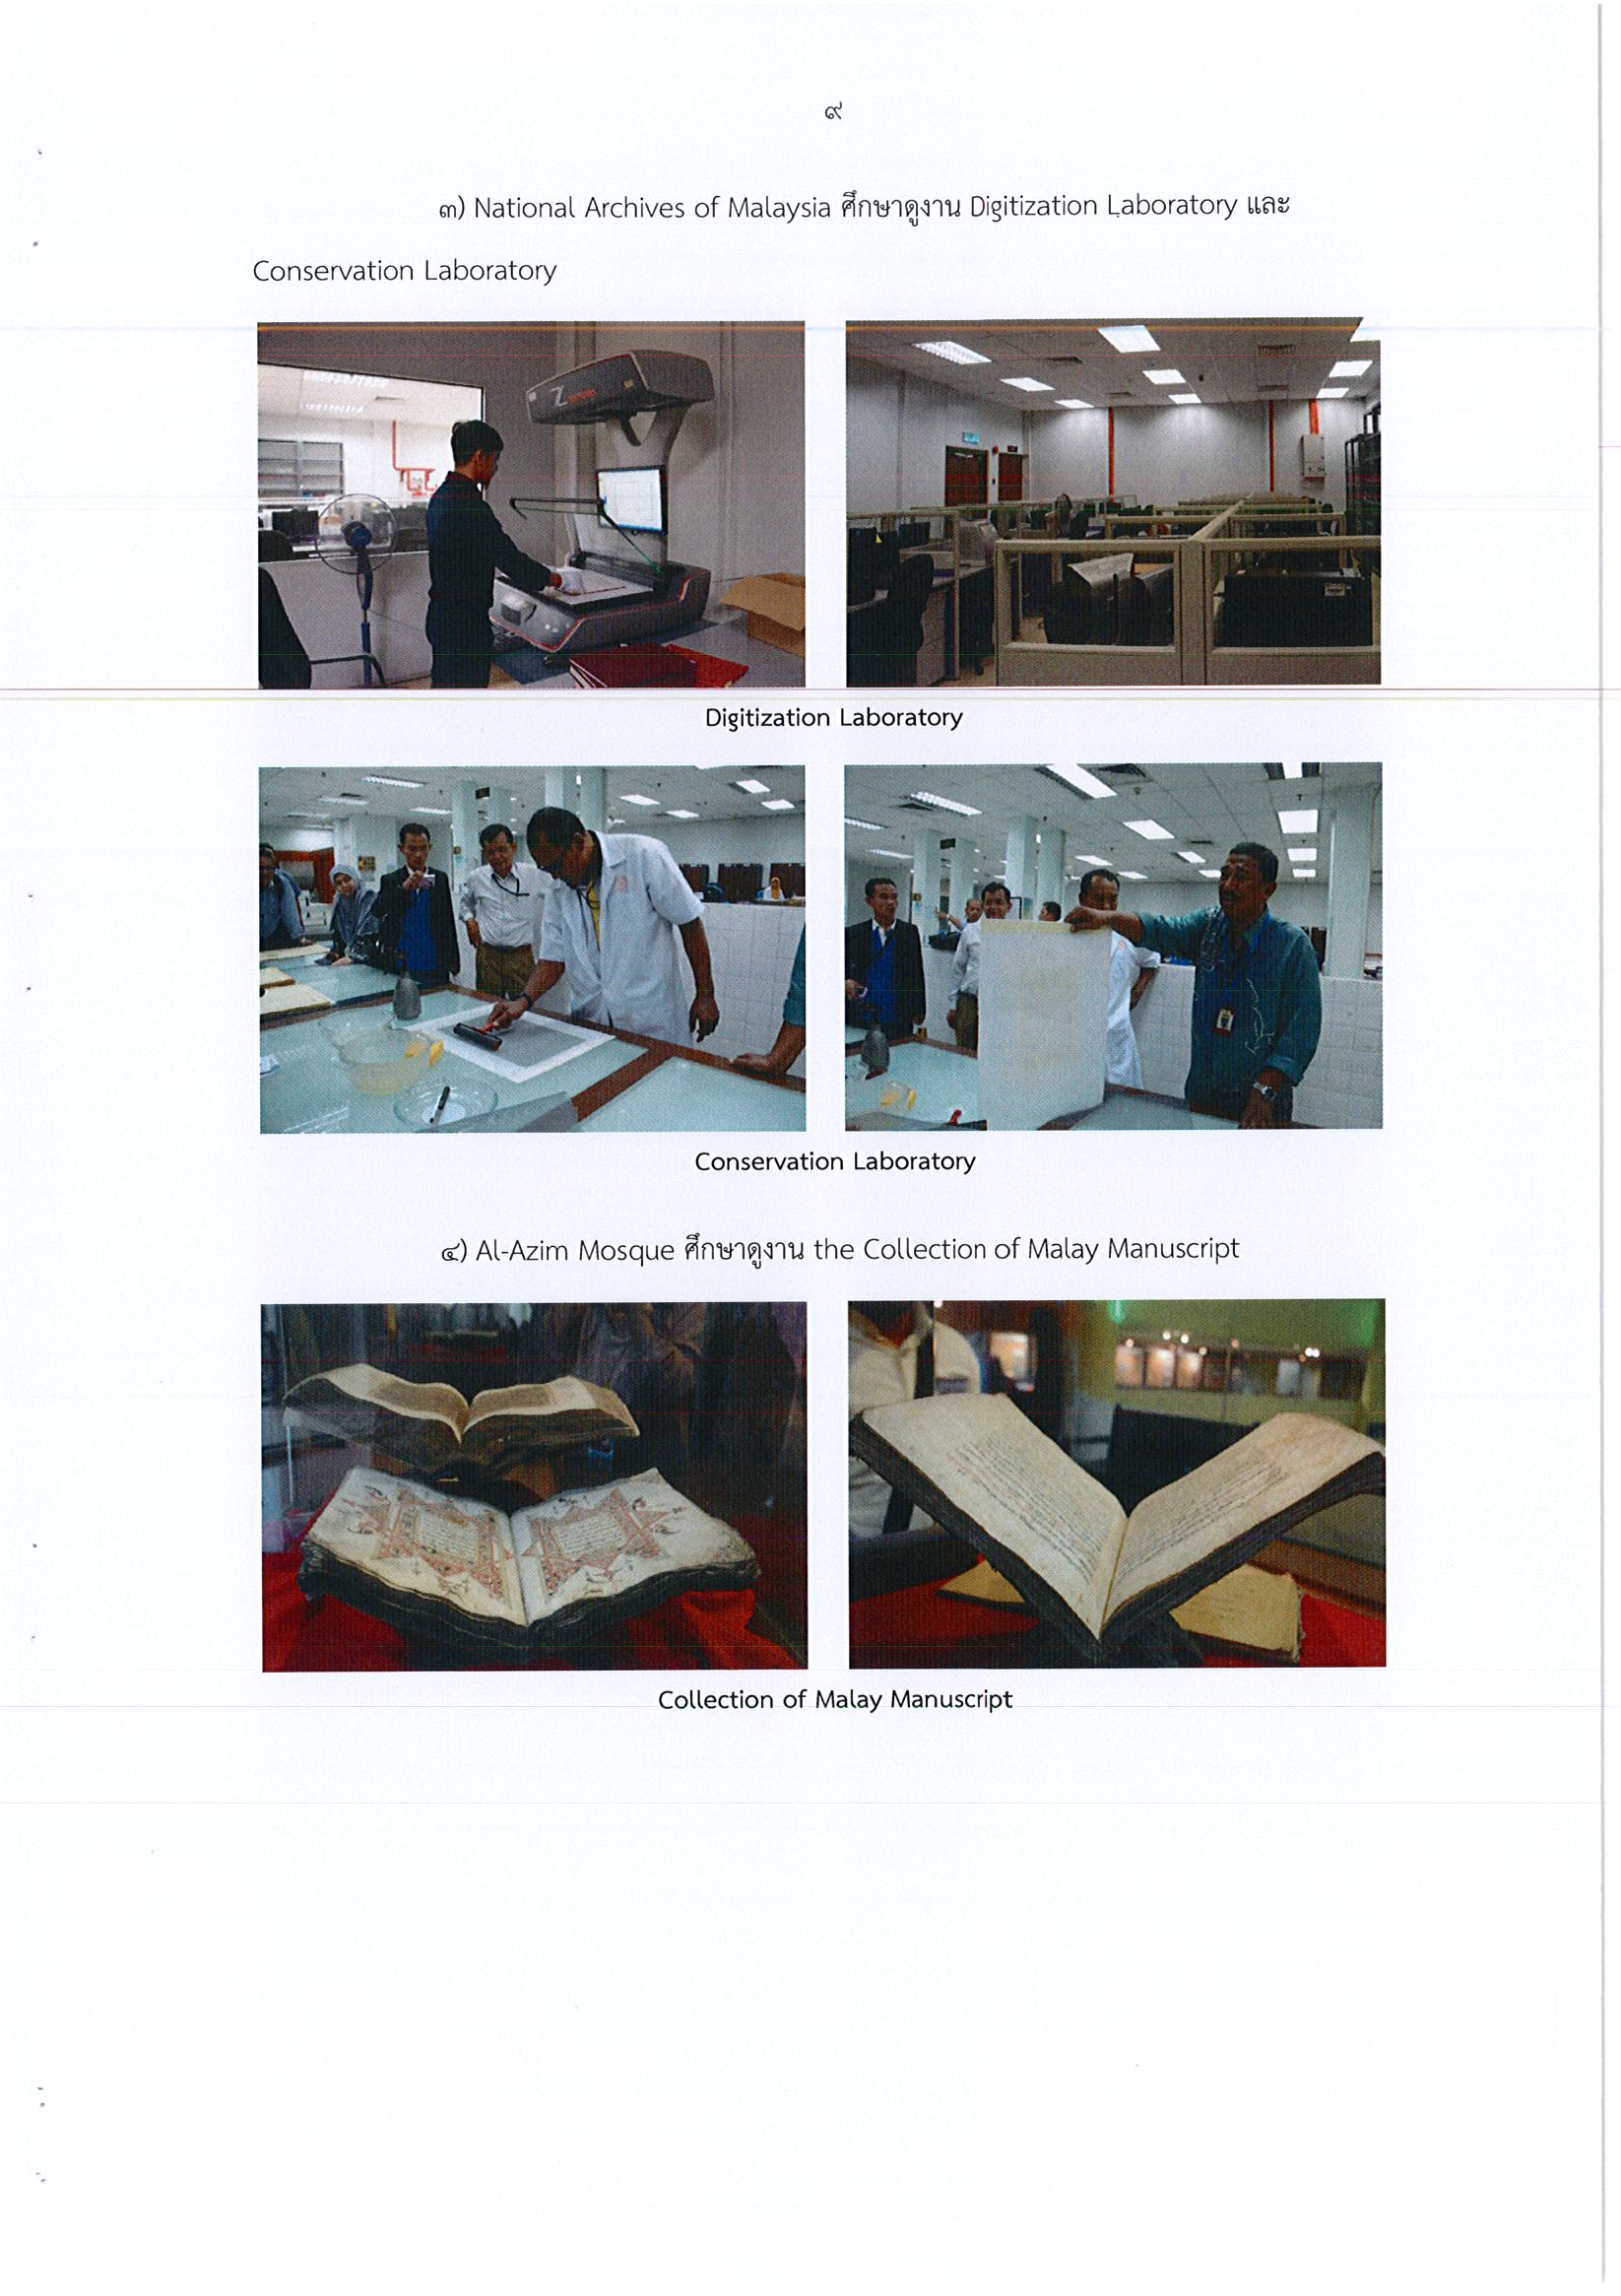 รายงานการเดินทางไปราชการ ณ สหพันธรัฐมาเลเซีย ระหว่างวันที่ 9 – 20 พฤษภาคม 2559 โครงการฝึกอบรมเชิงปฏิบัติการด้านการอนุรักษ์เอกสารตัวเขียน